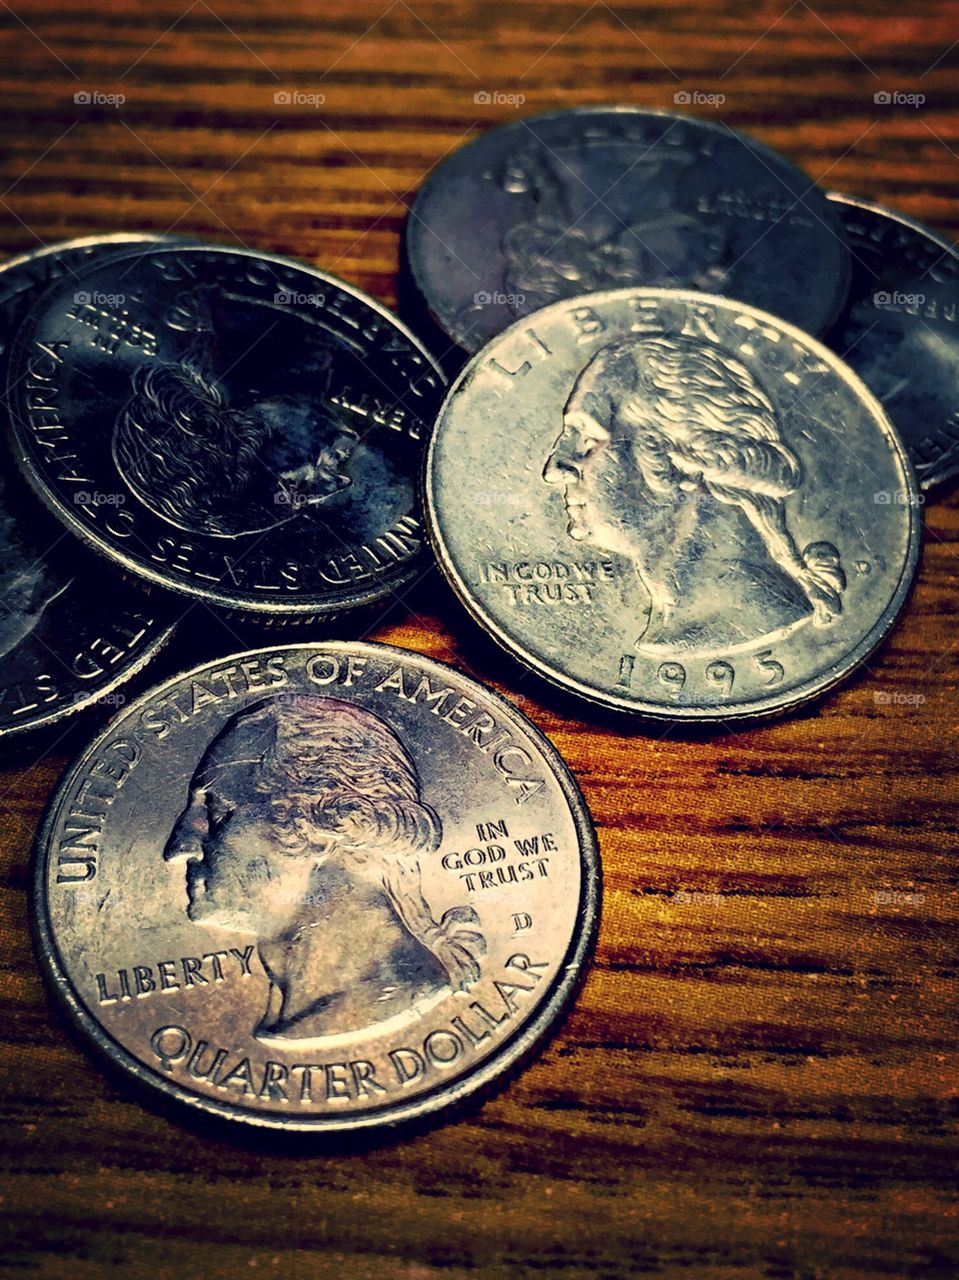 USA Quarters